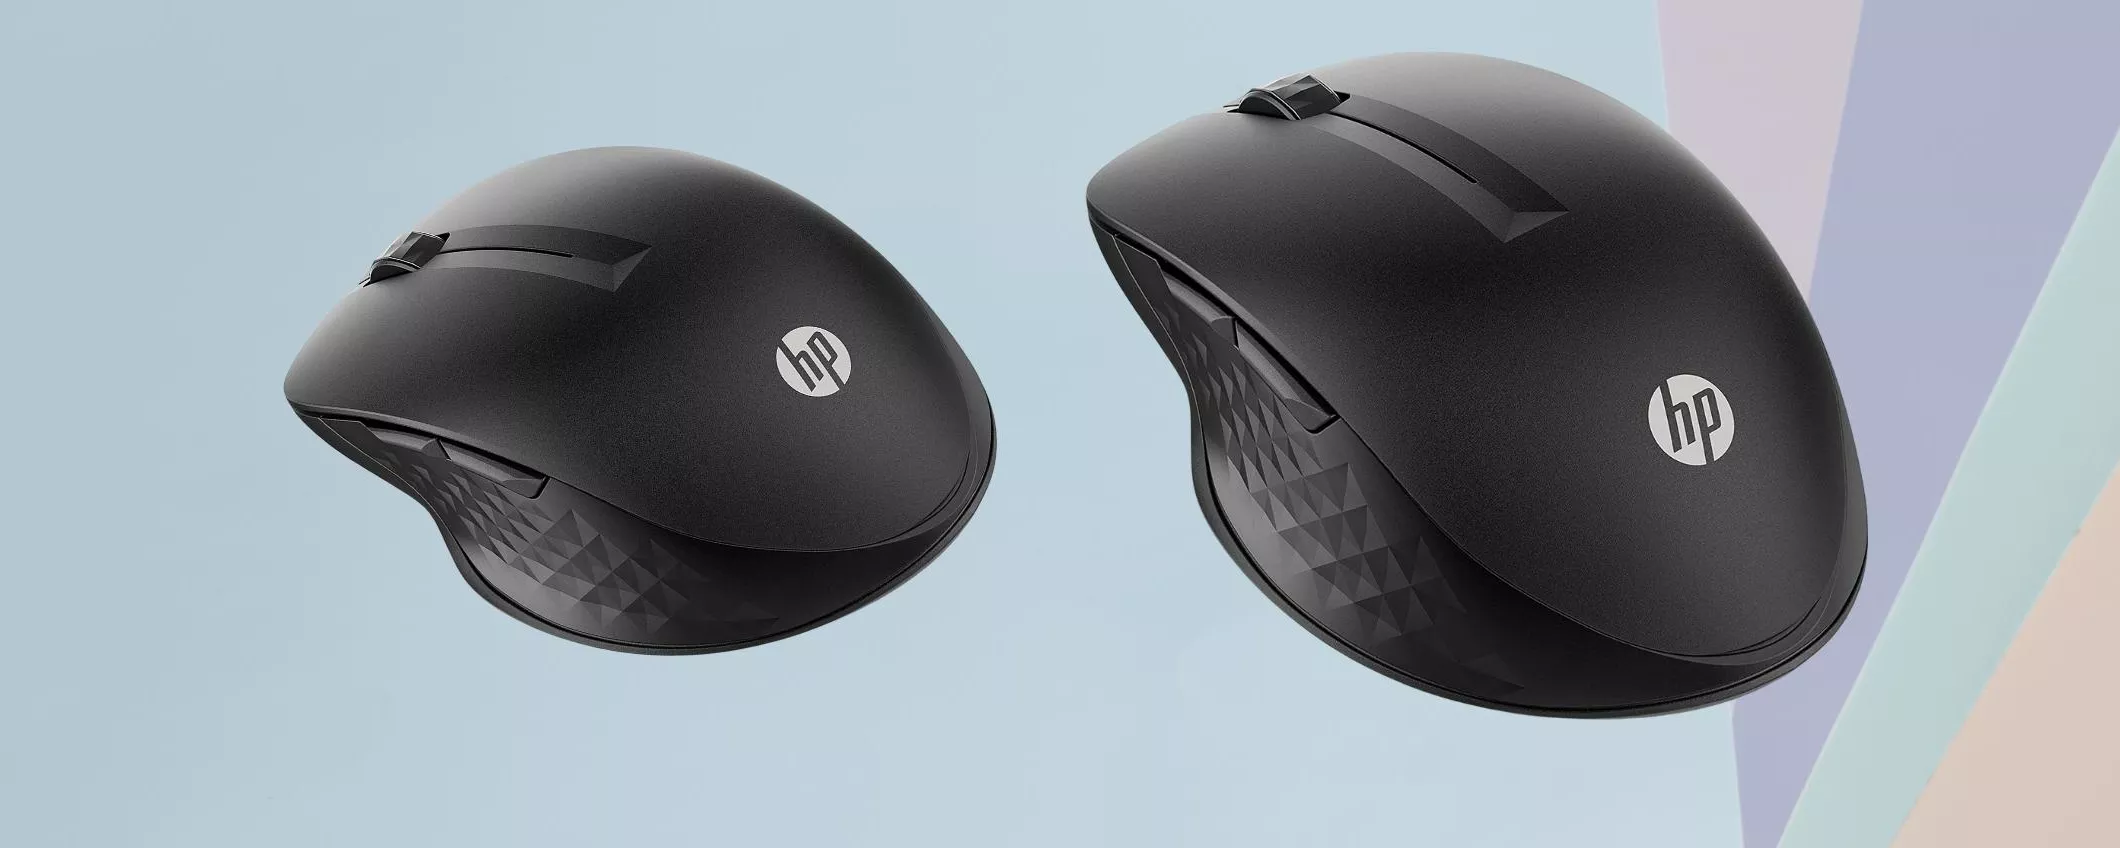 Mouse wireless HP, sia Bluetooth che 2.4Ghz con 4000DPI